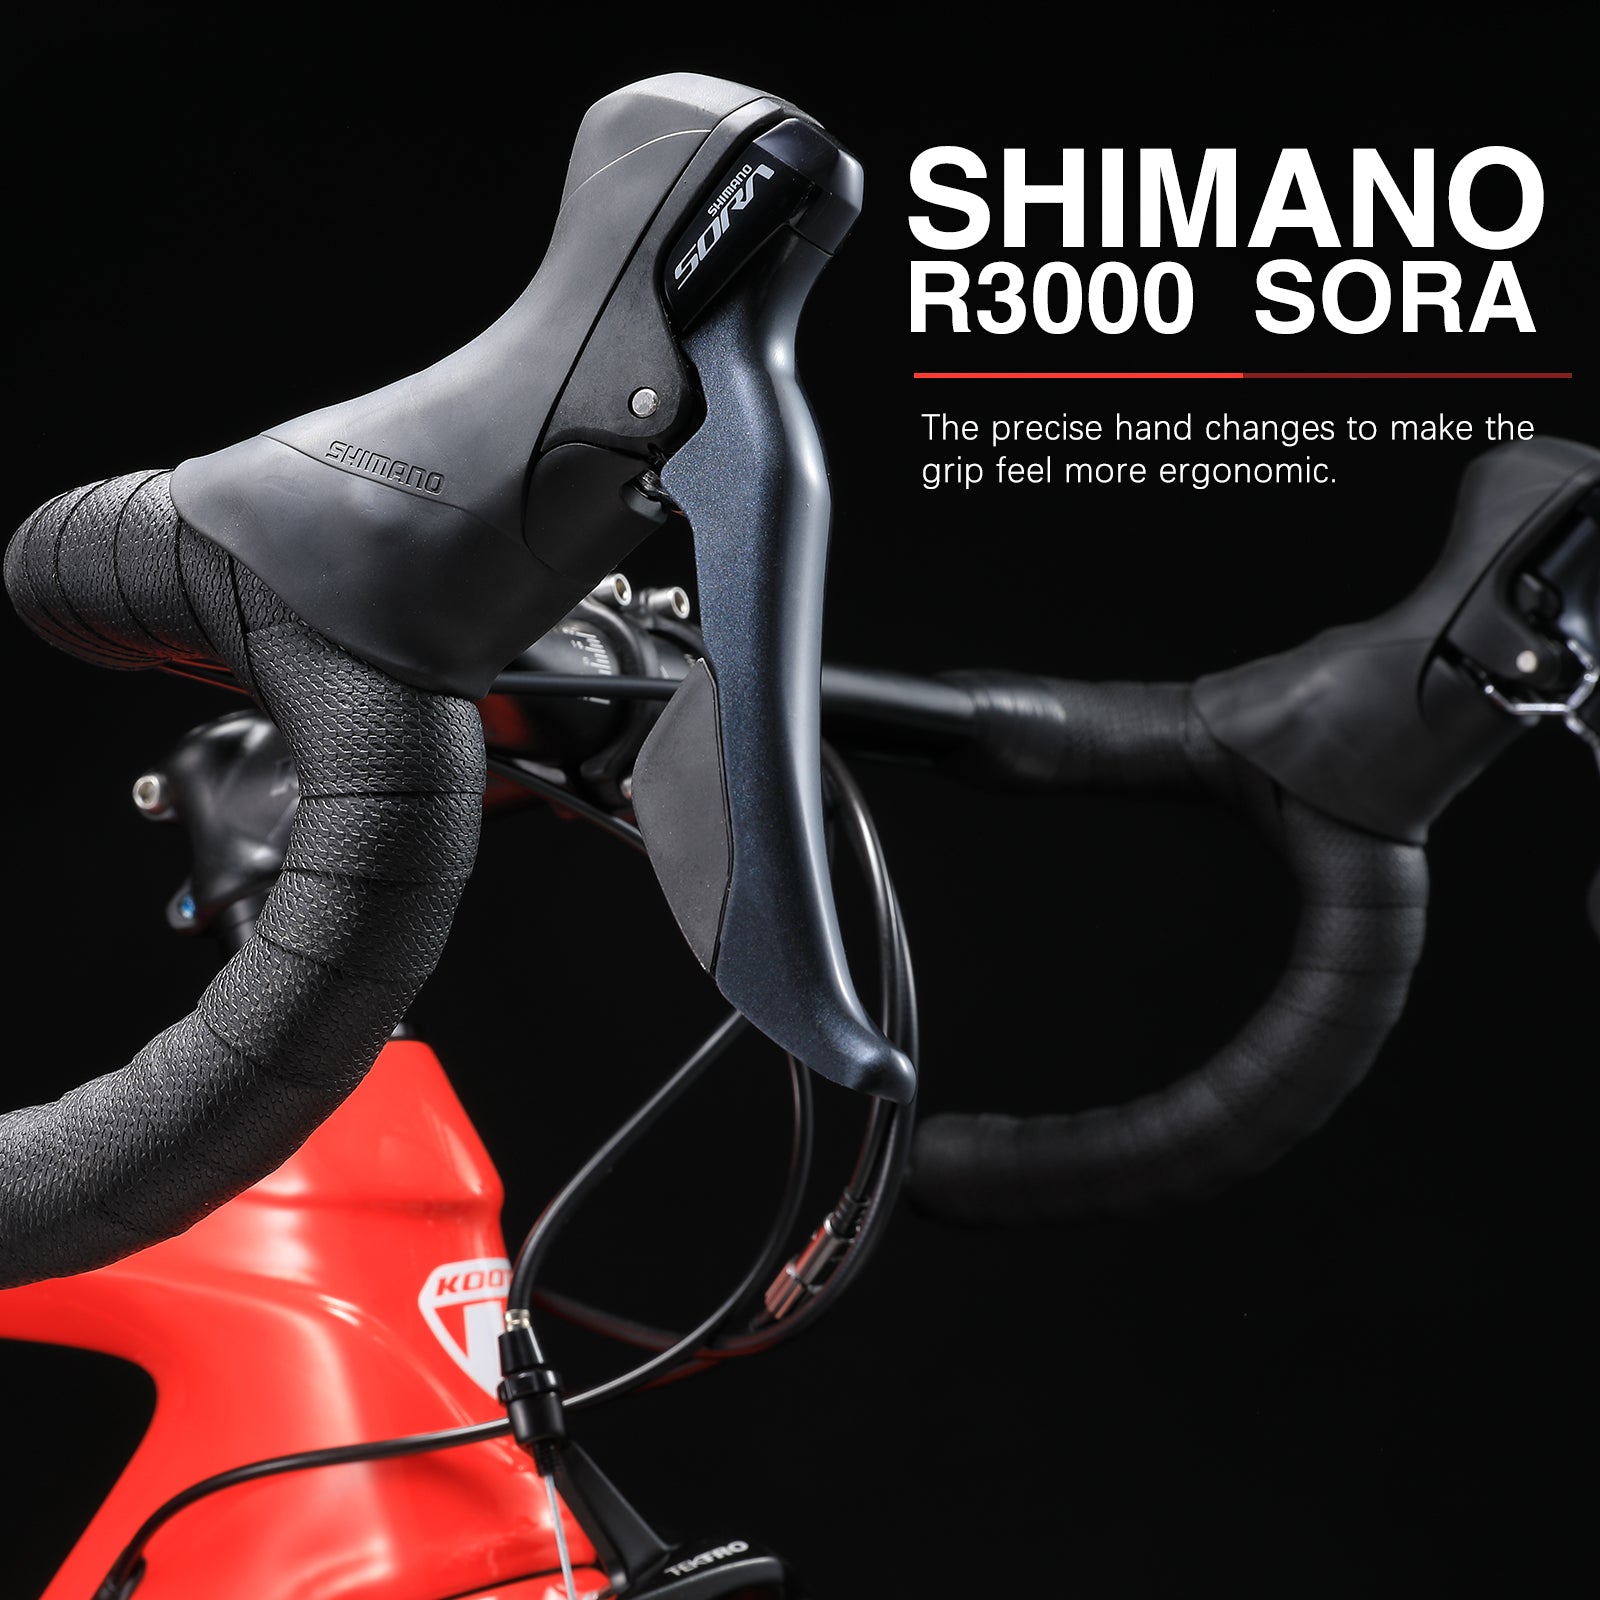 KOOTU R03 Carbon Rennrad mit Shimano Sora R3000 Schalthebel